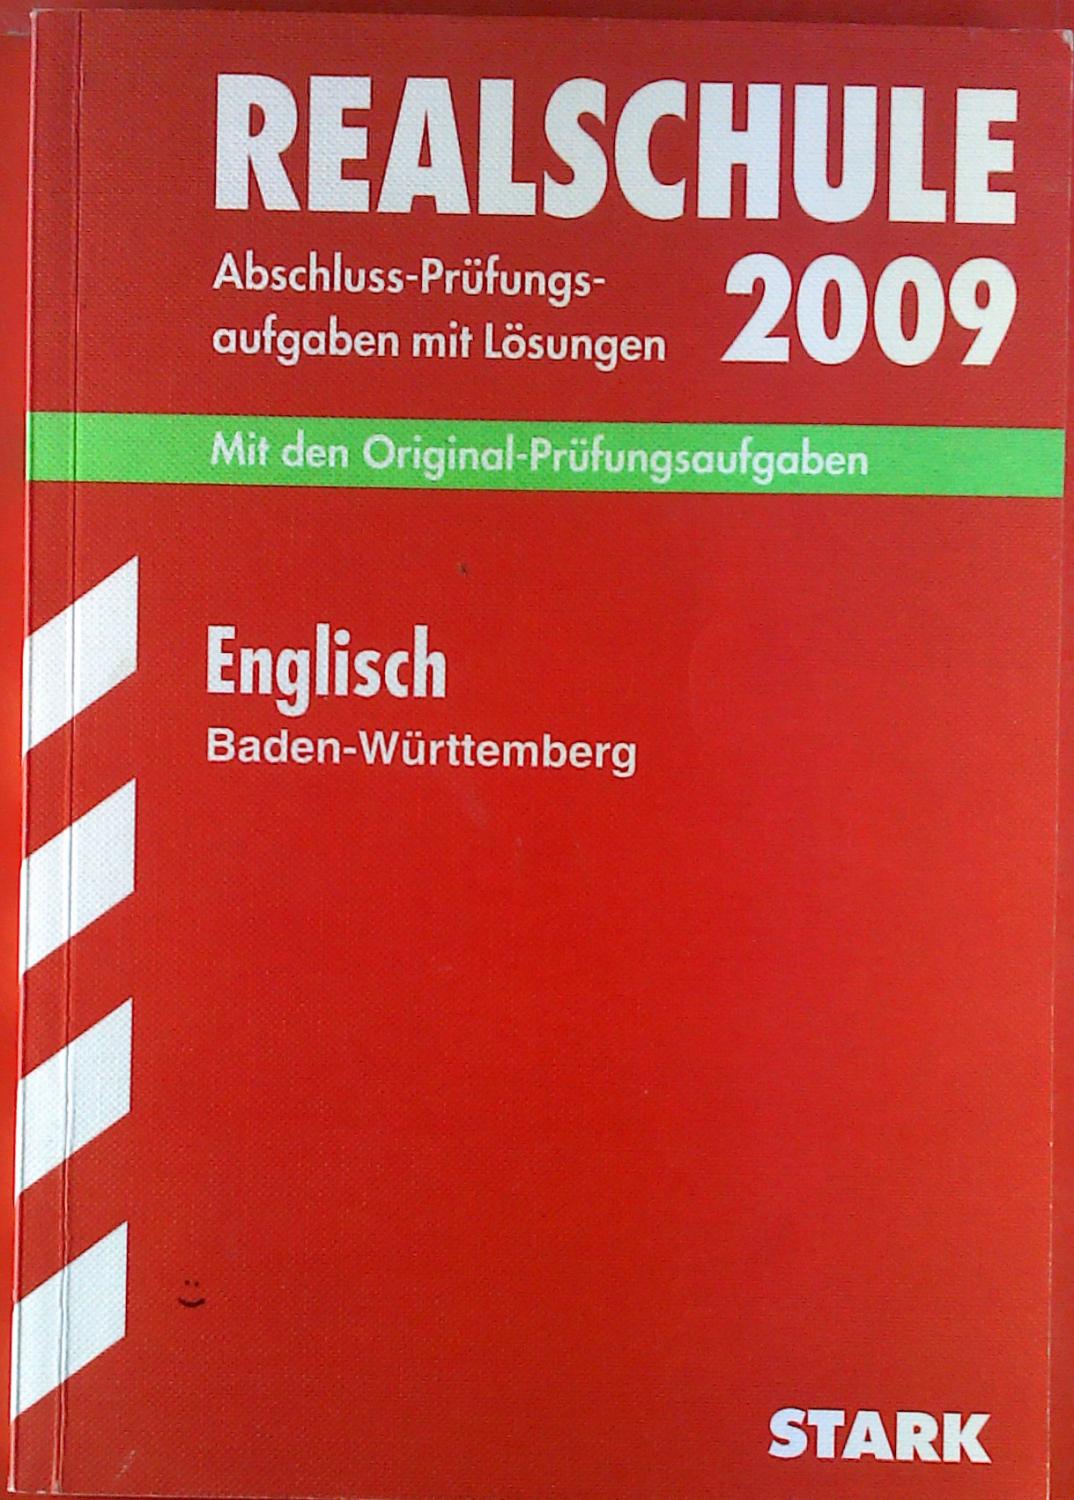 Realschule 2009. Abschluss-Prüfungen mit Lösungen. Mit den Original-Prüfungsaufgaben. Englisch, Baden-Württemberg, 2005 - 2008. - Elke Lüdke u. a.